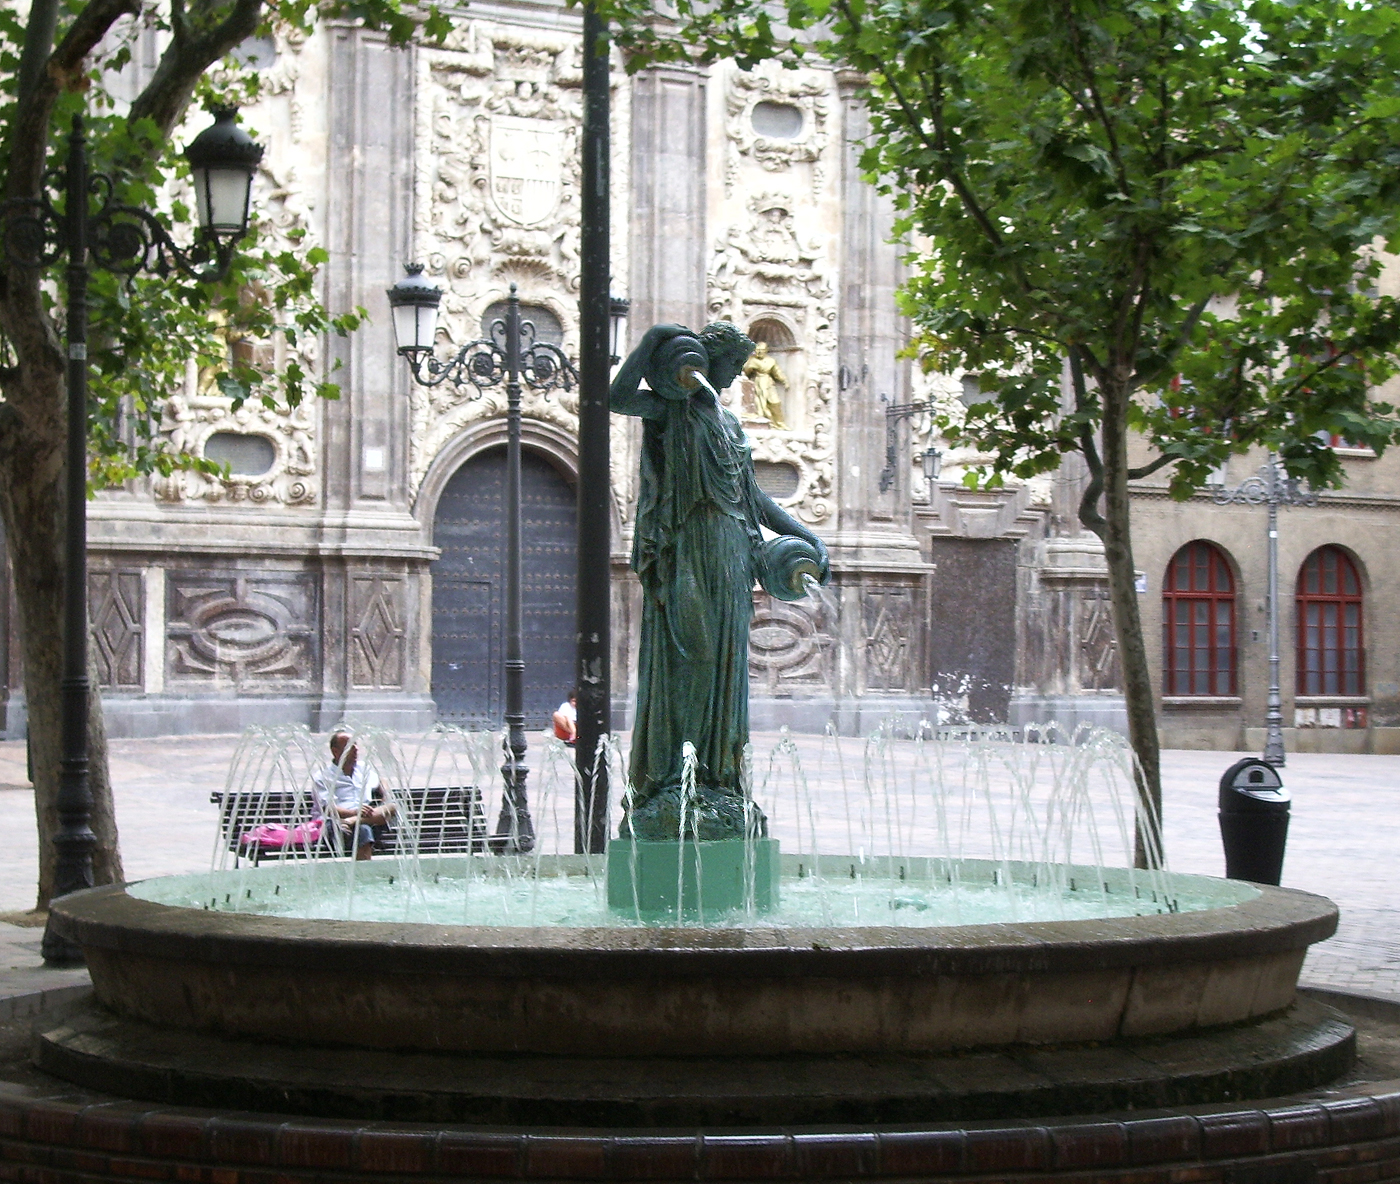 Plaza del Justicia